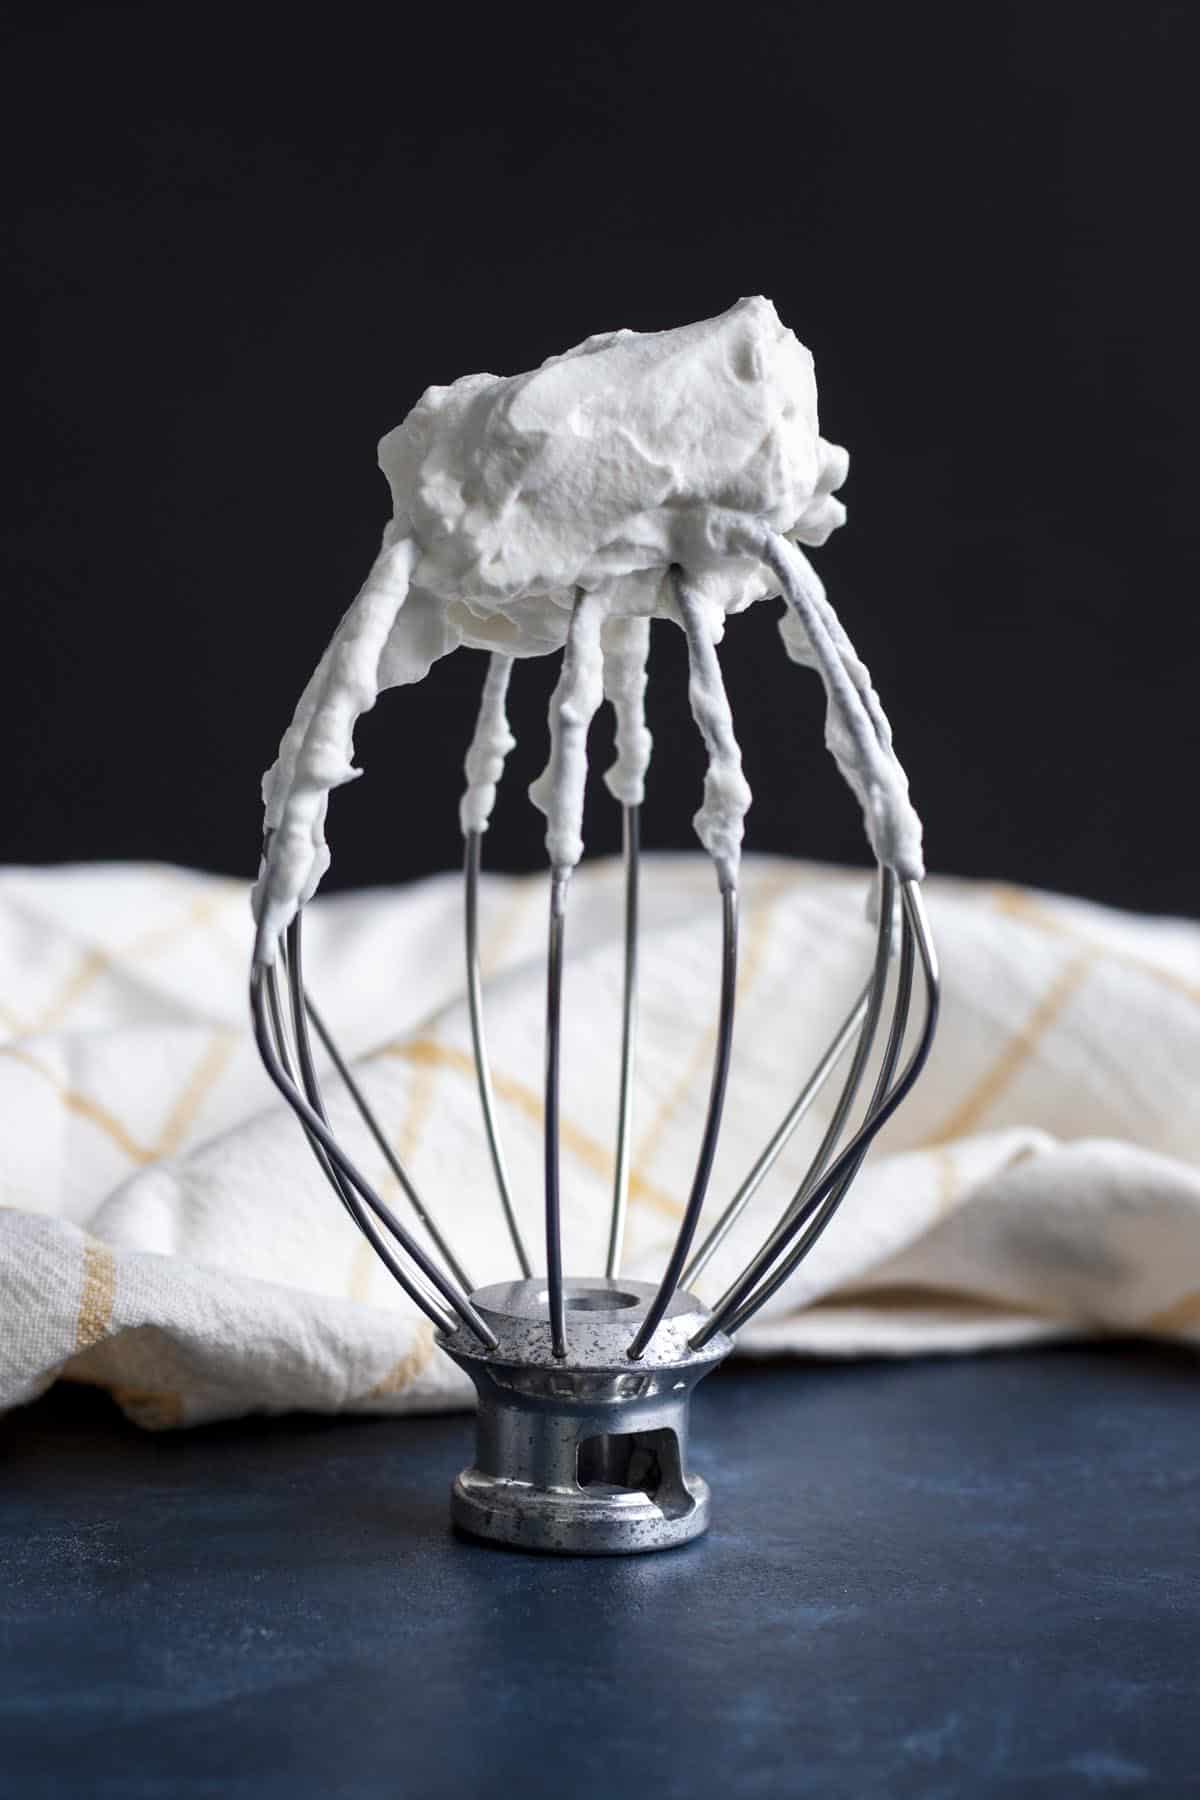 Homemade whipped cream - stiff peak